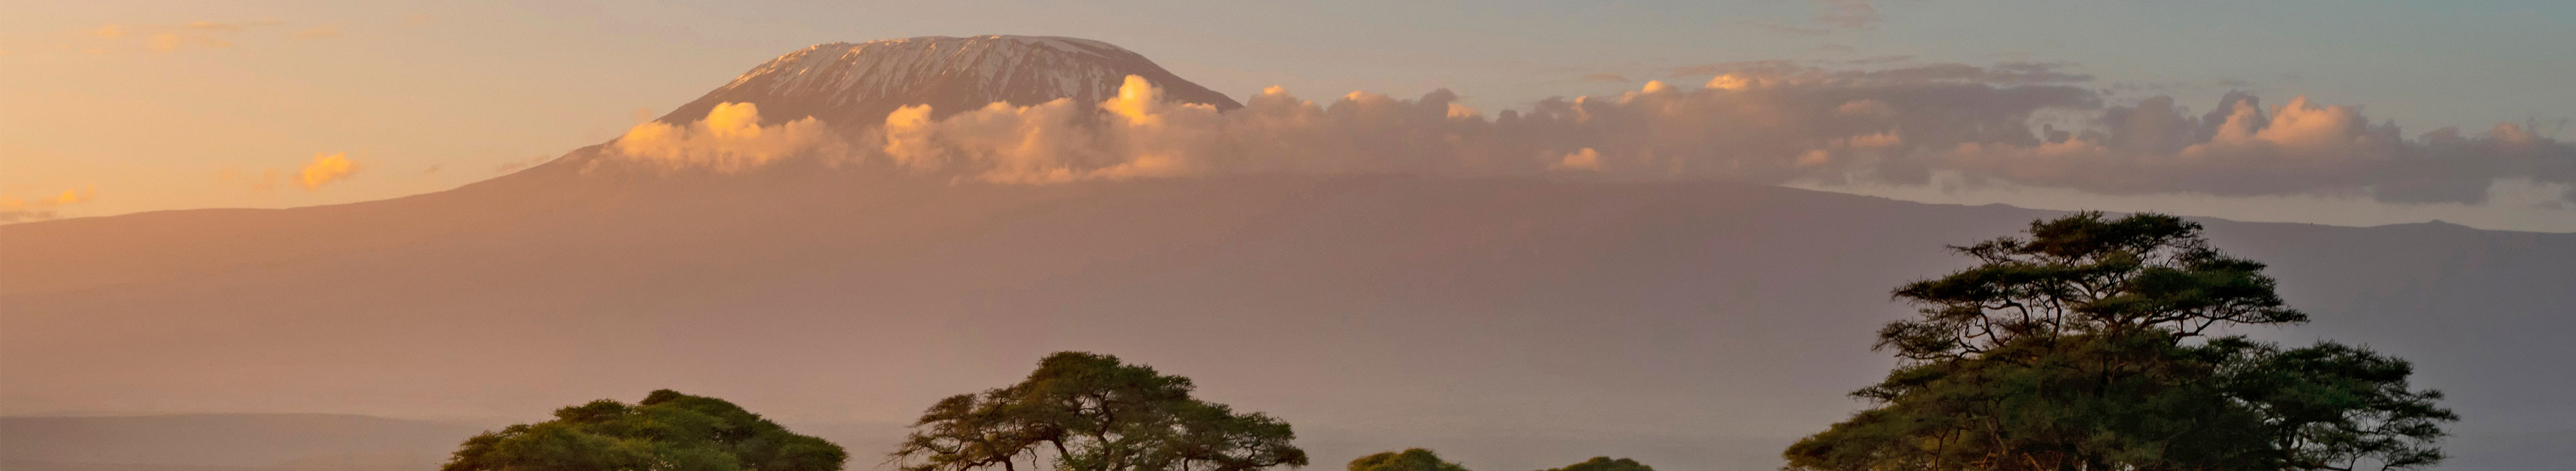 Der Berg Kilimanjaro im Hintergrund, in Kenia